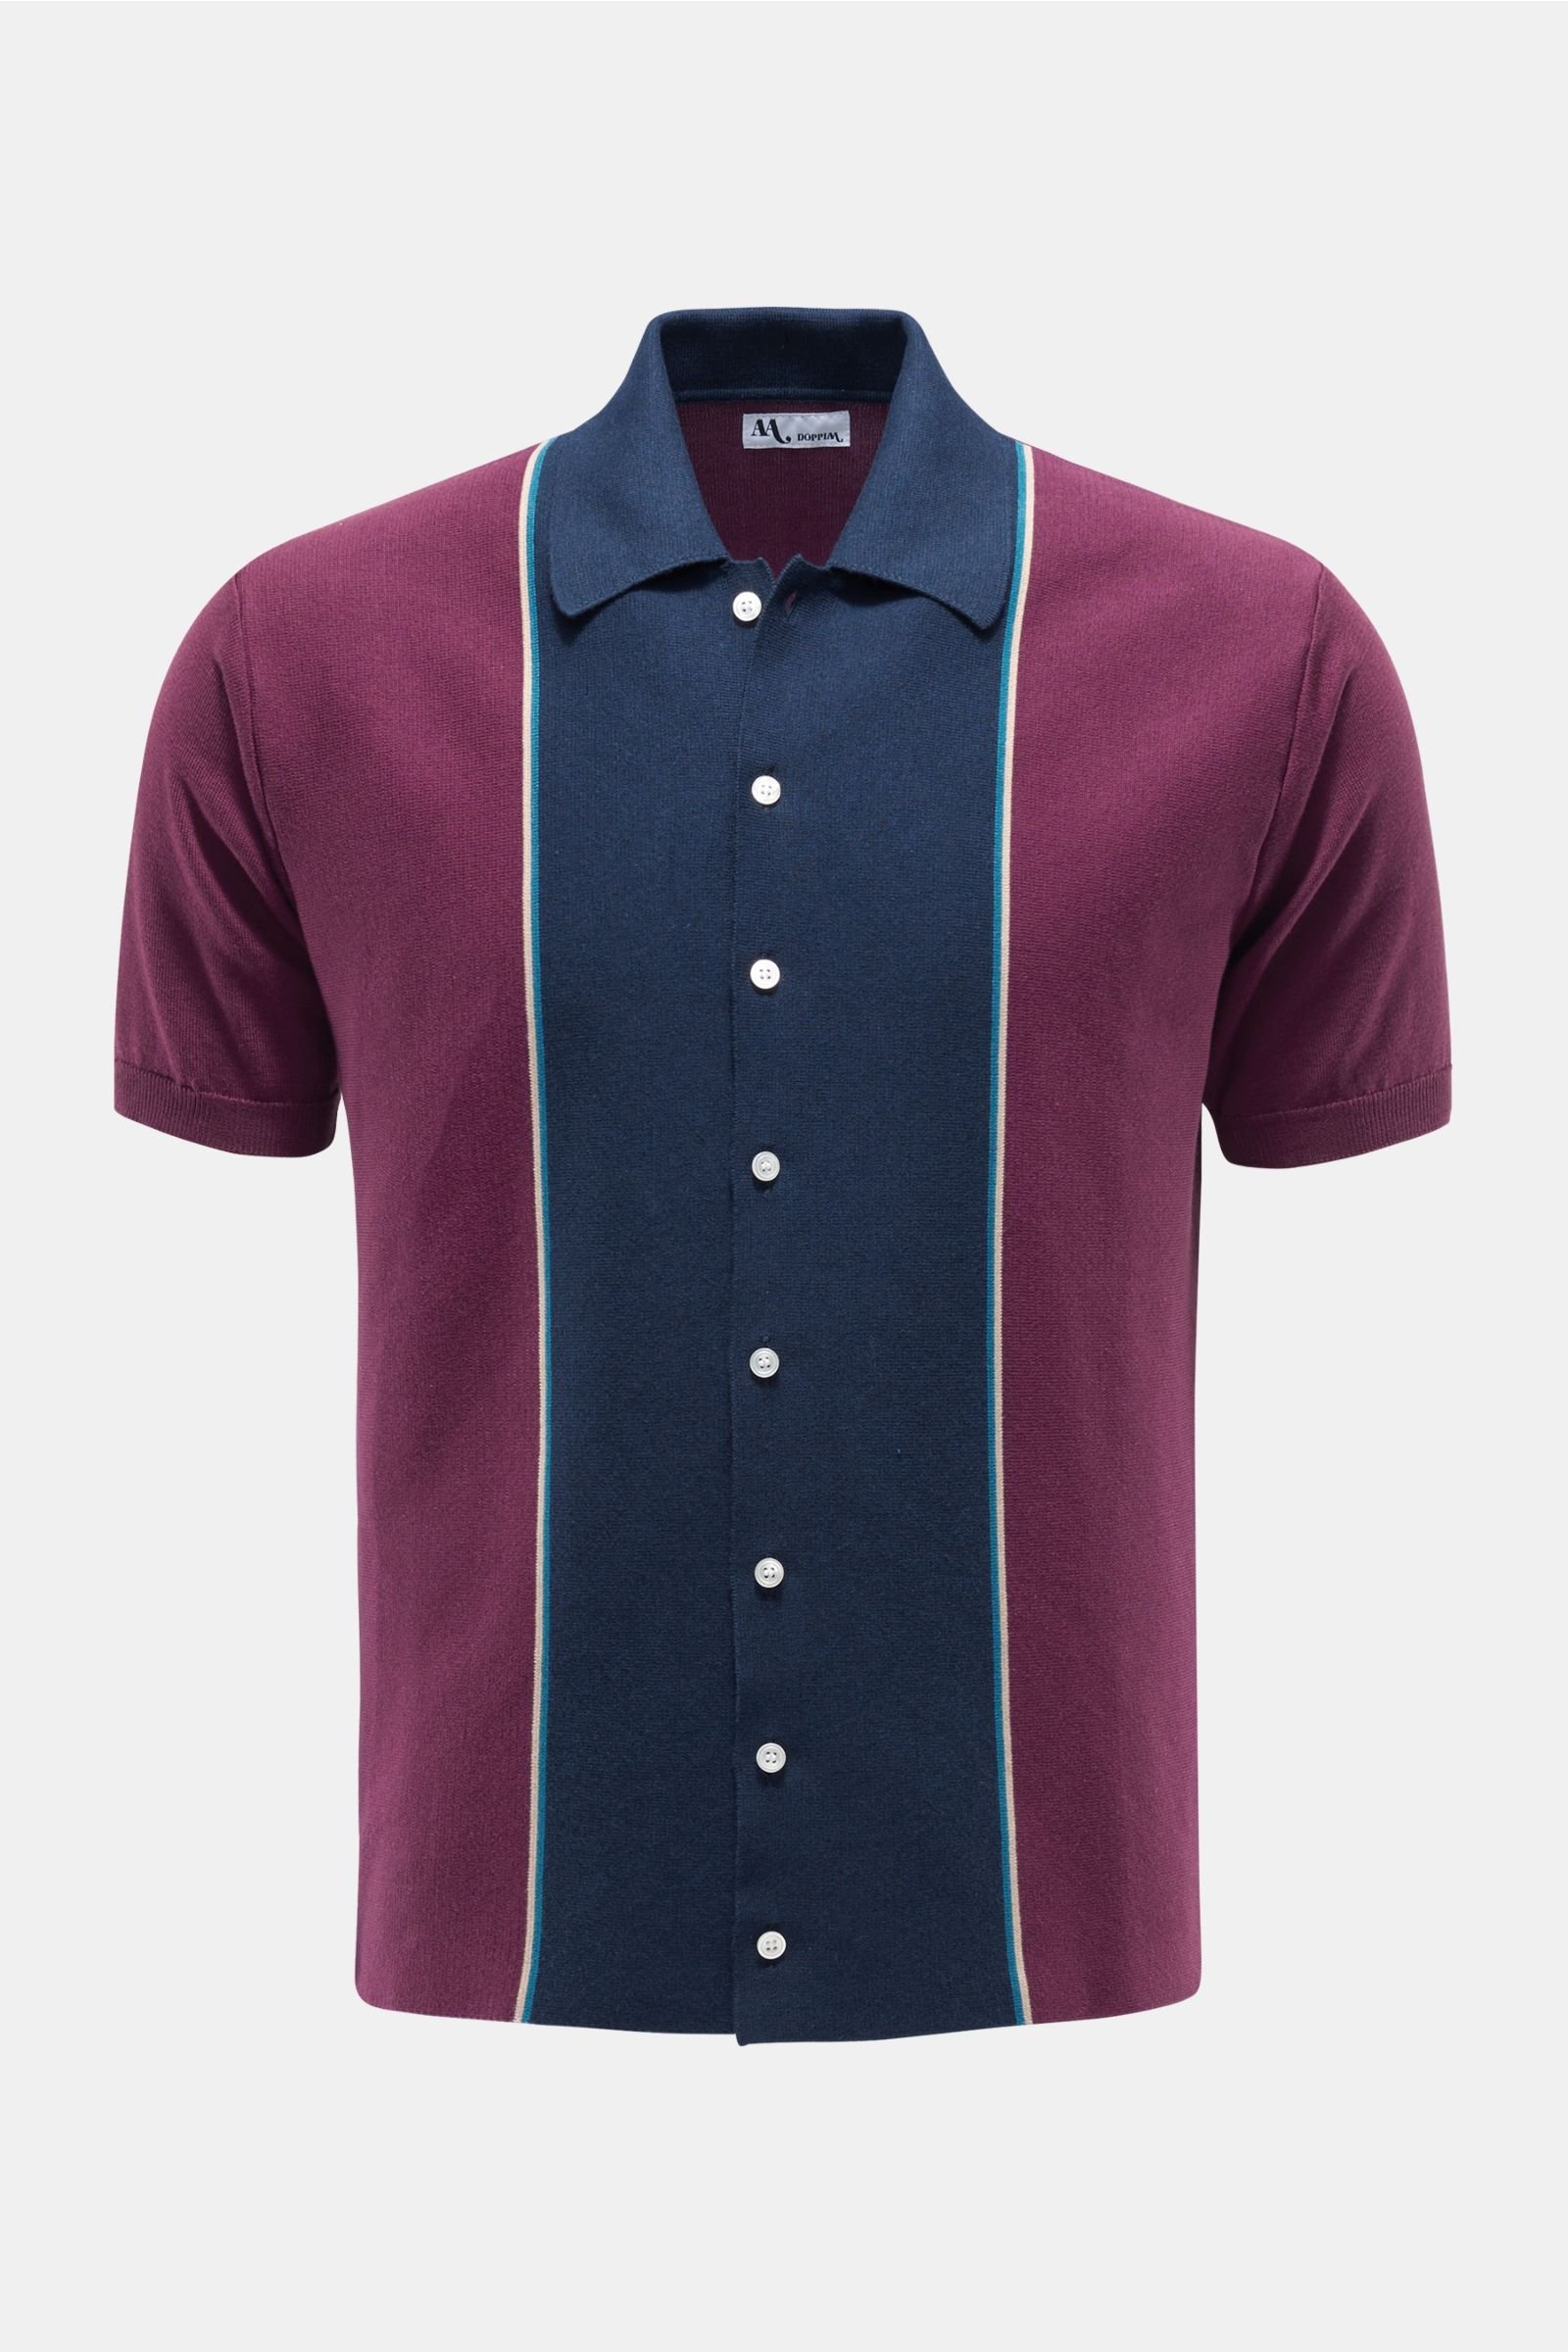 Short sleeve shirt in 'Aars' burgundy/navy